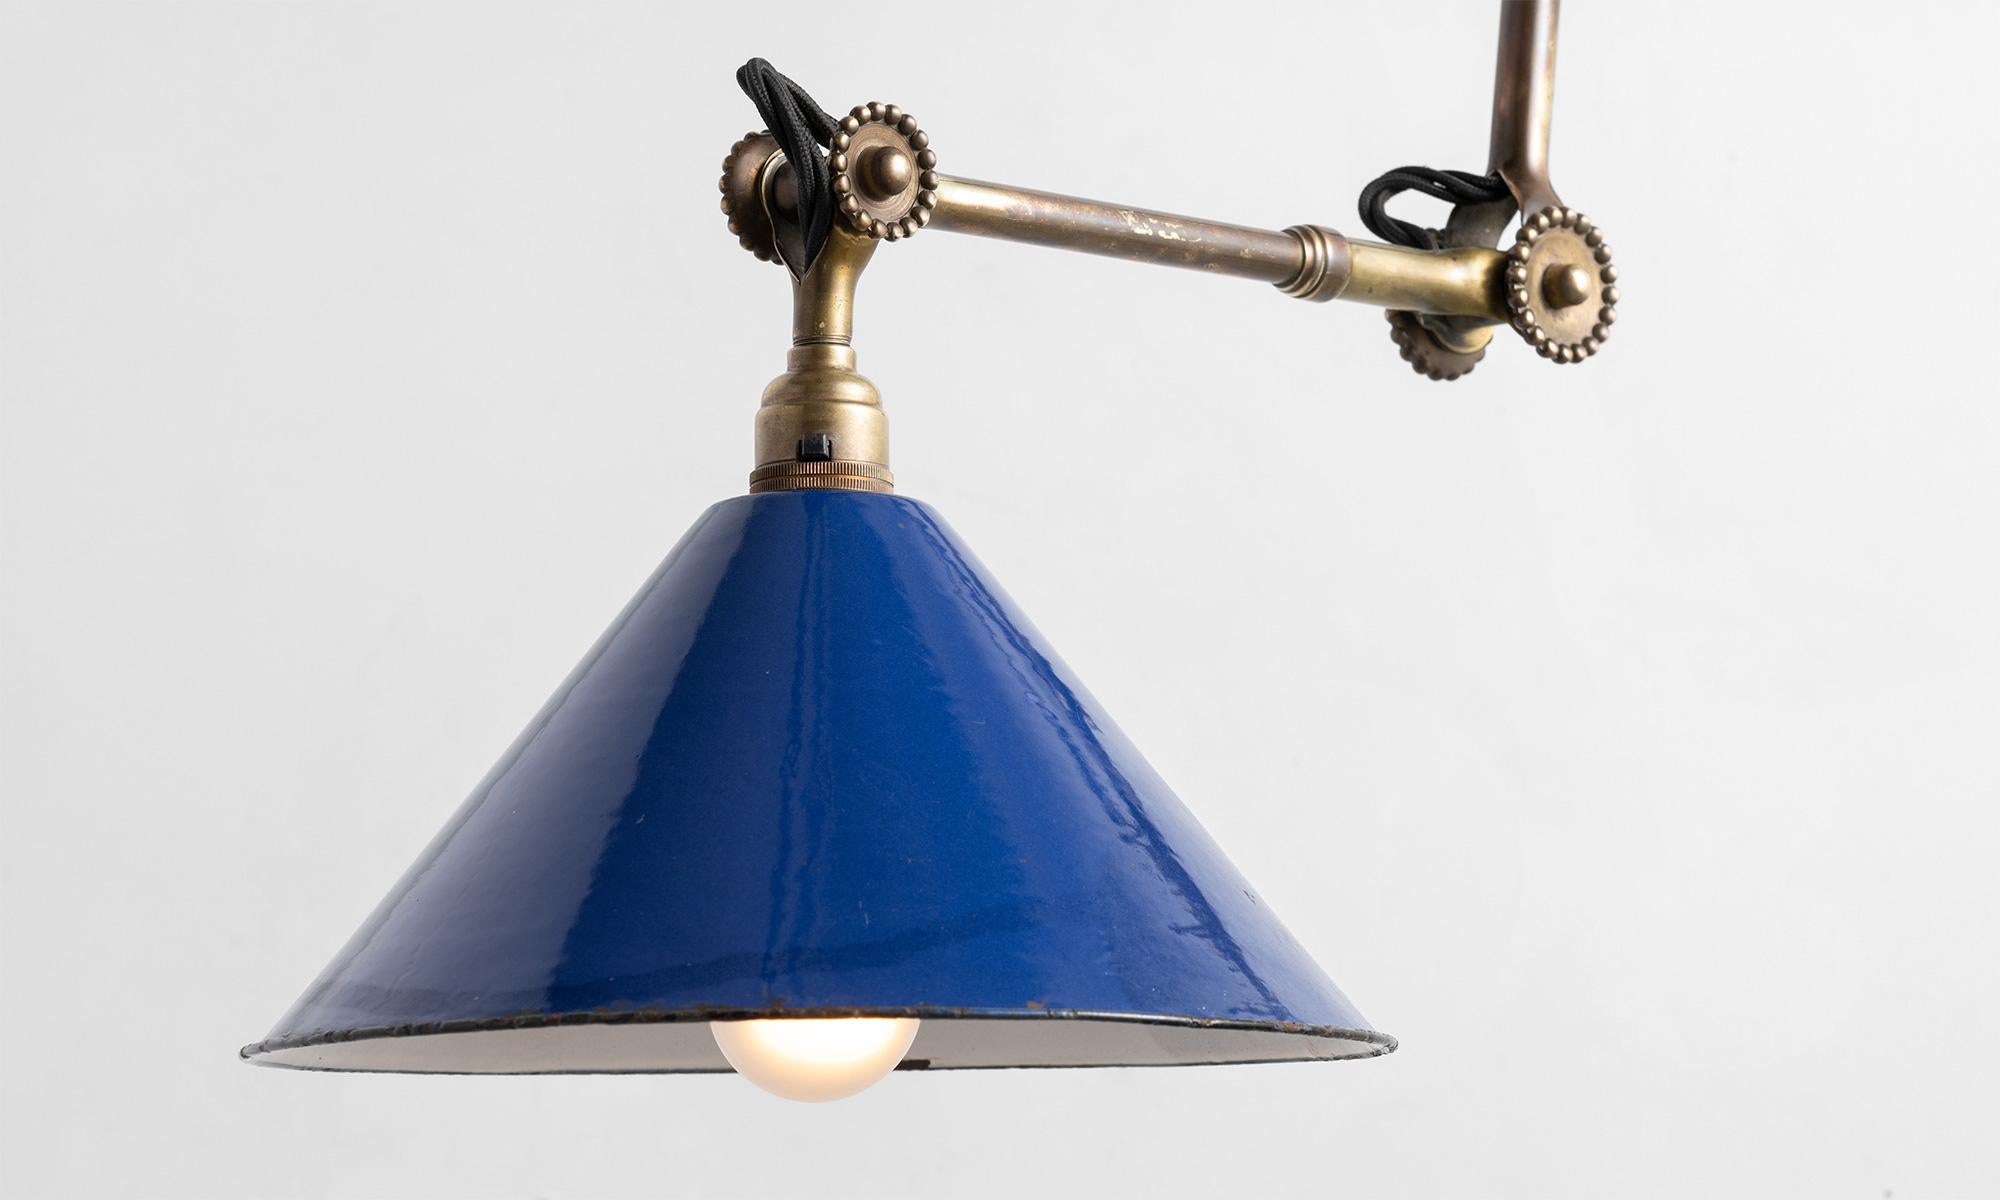 Metal Rare Dugdills Task Lamp, England circa 1920